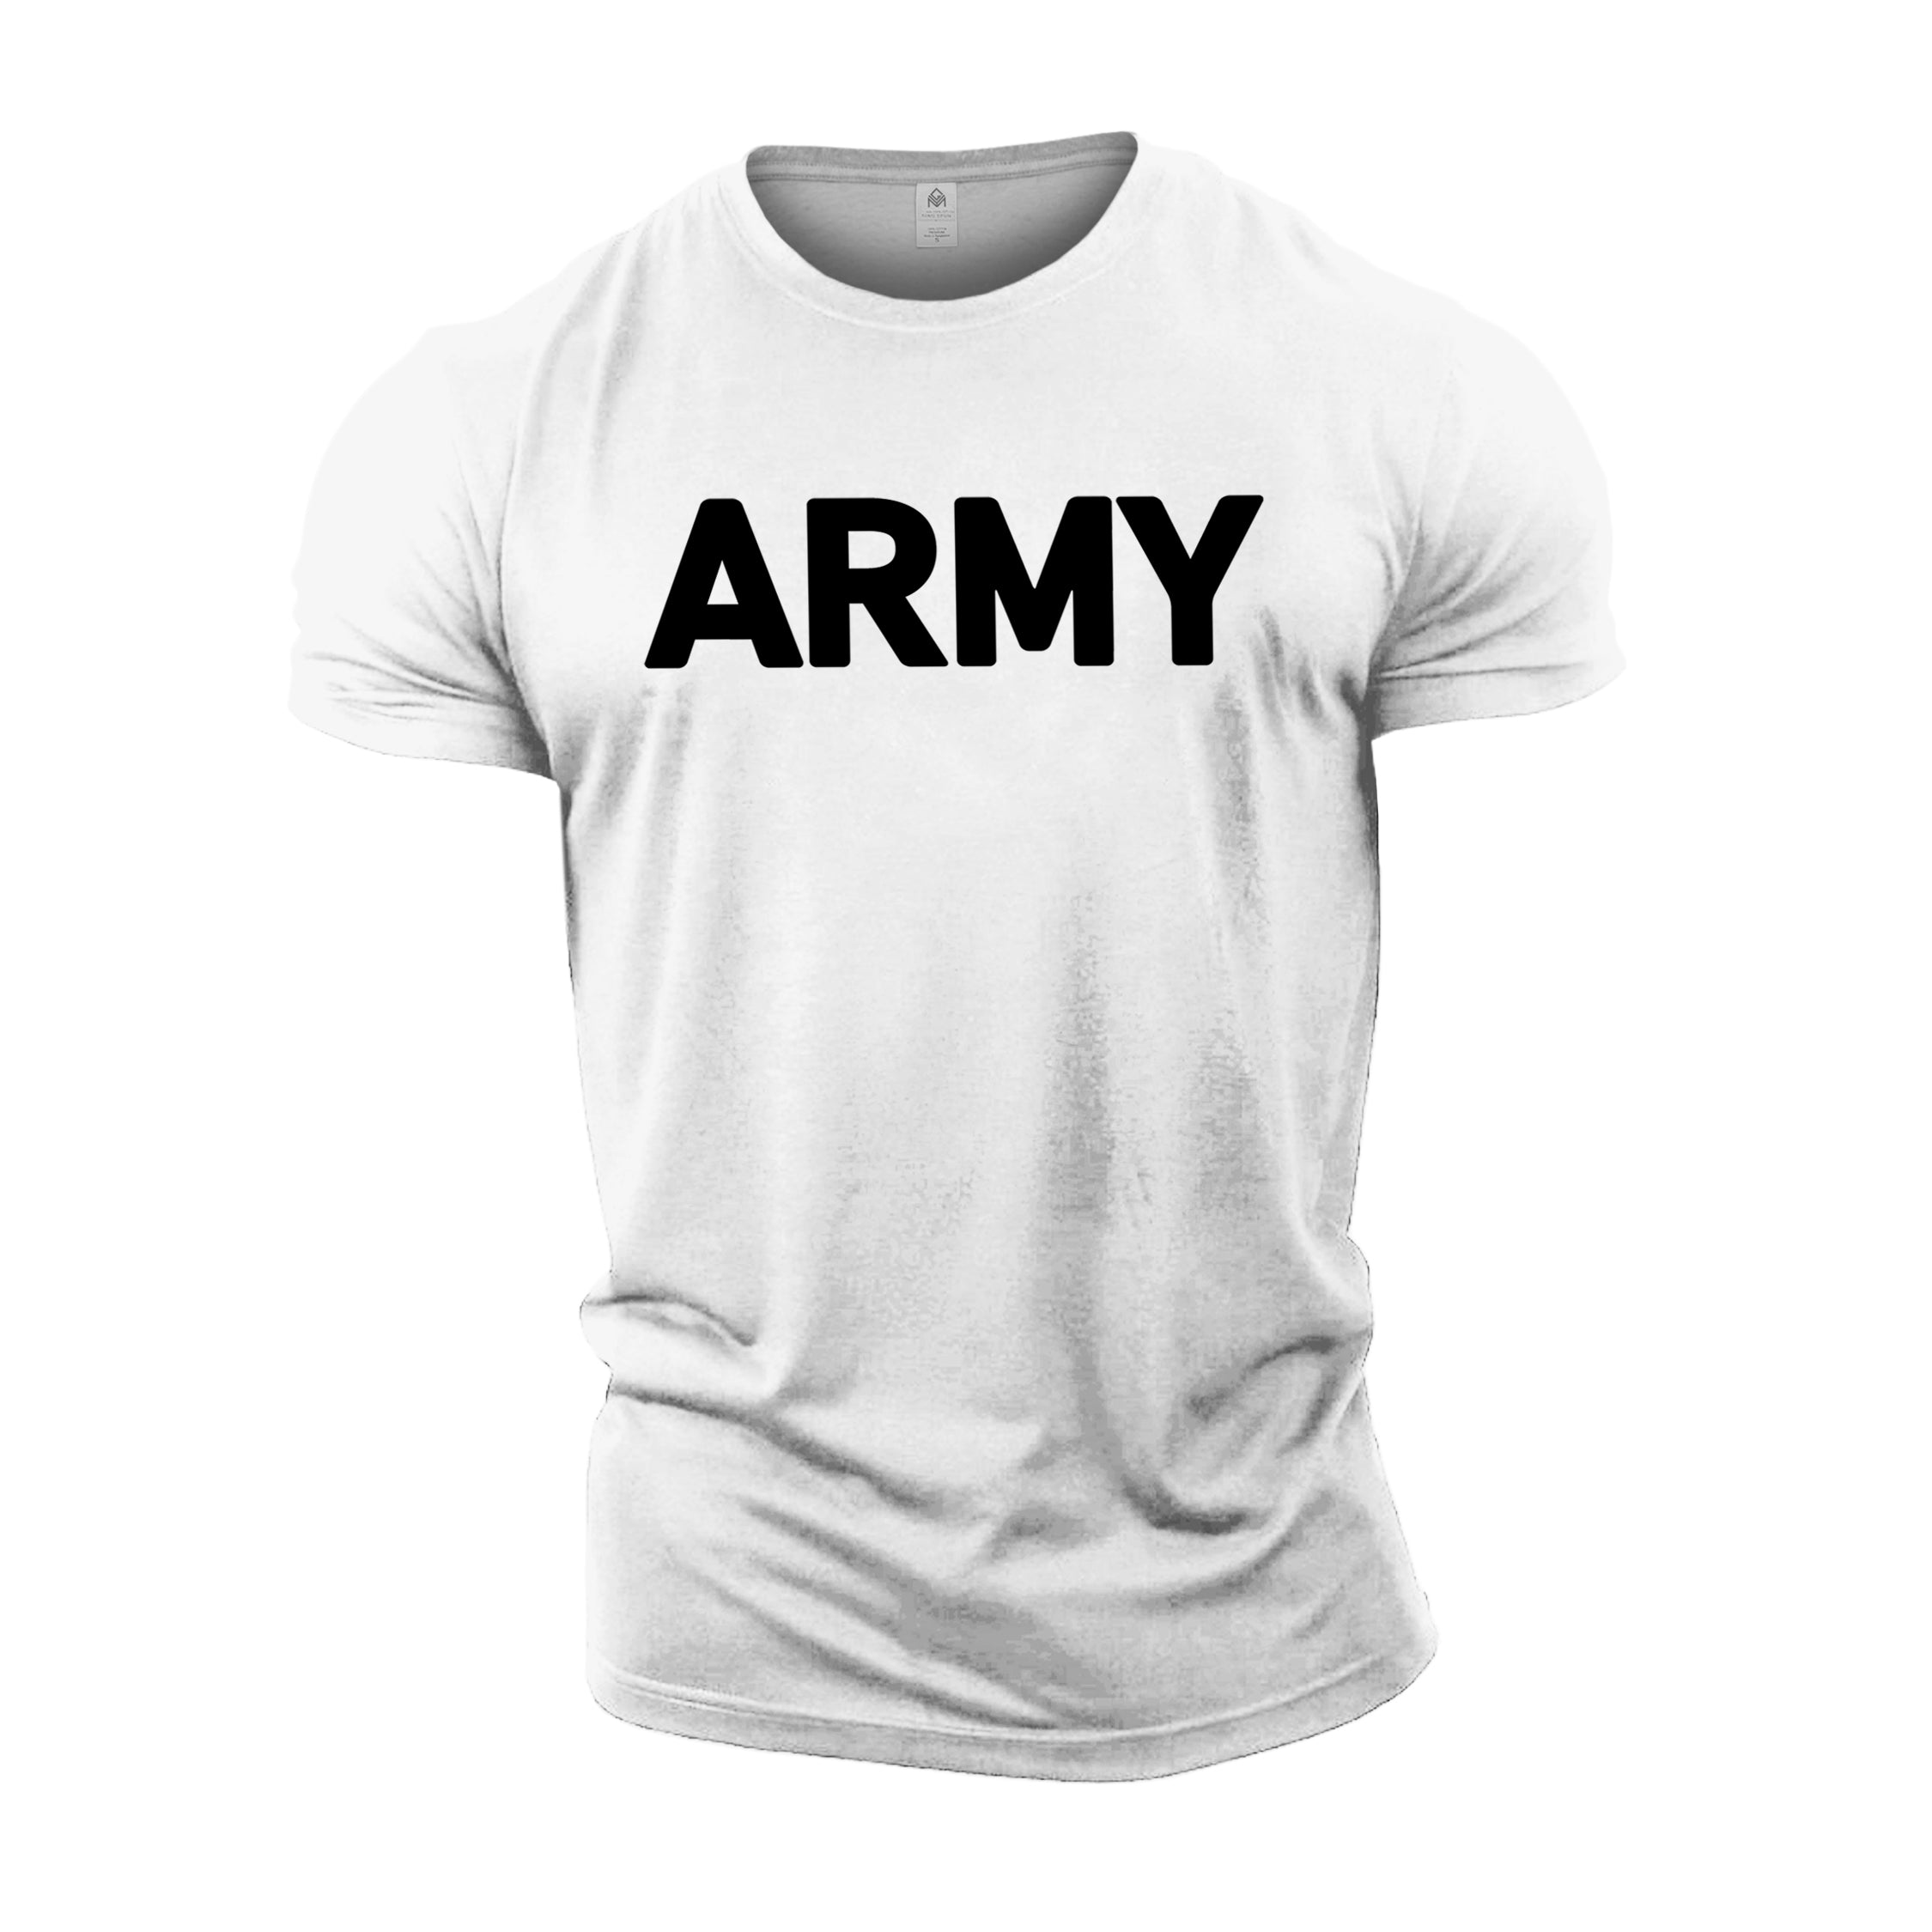 Army - Gym T-Shirt